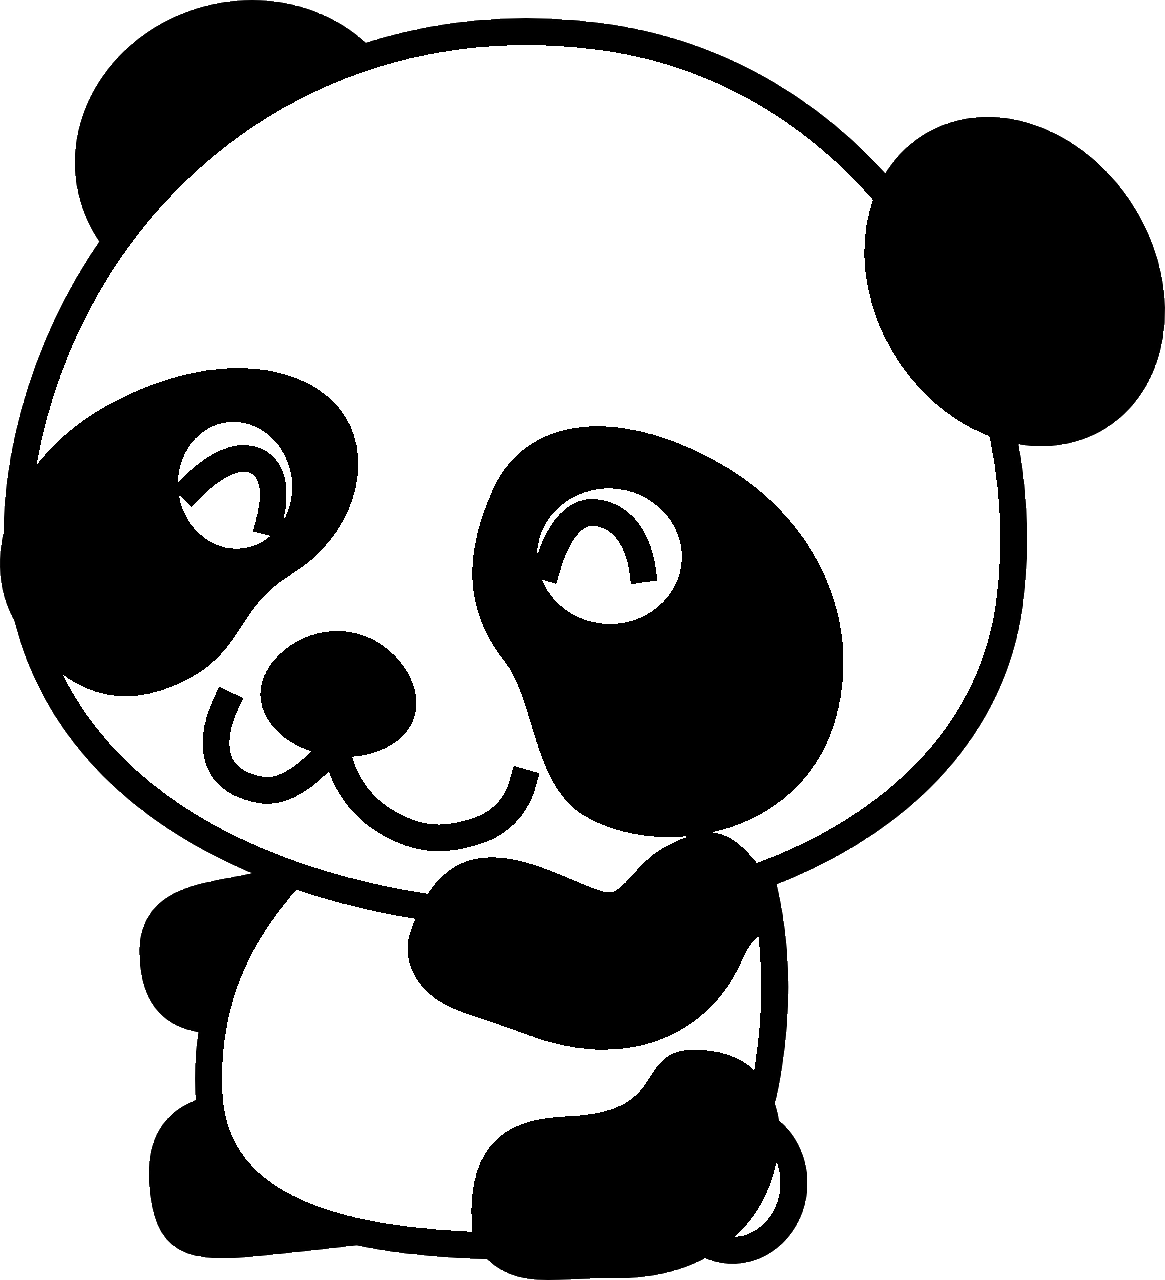 Disegno da colorare di orso panda kawaii